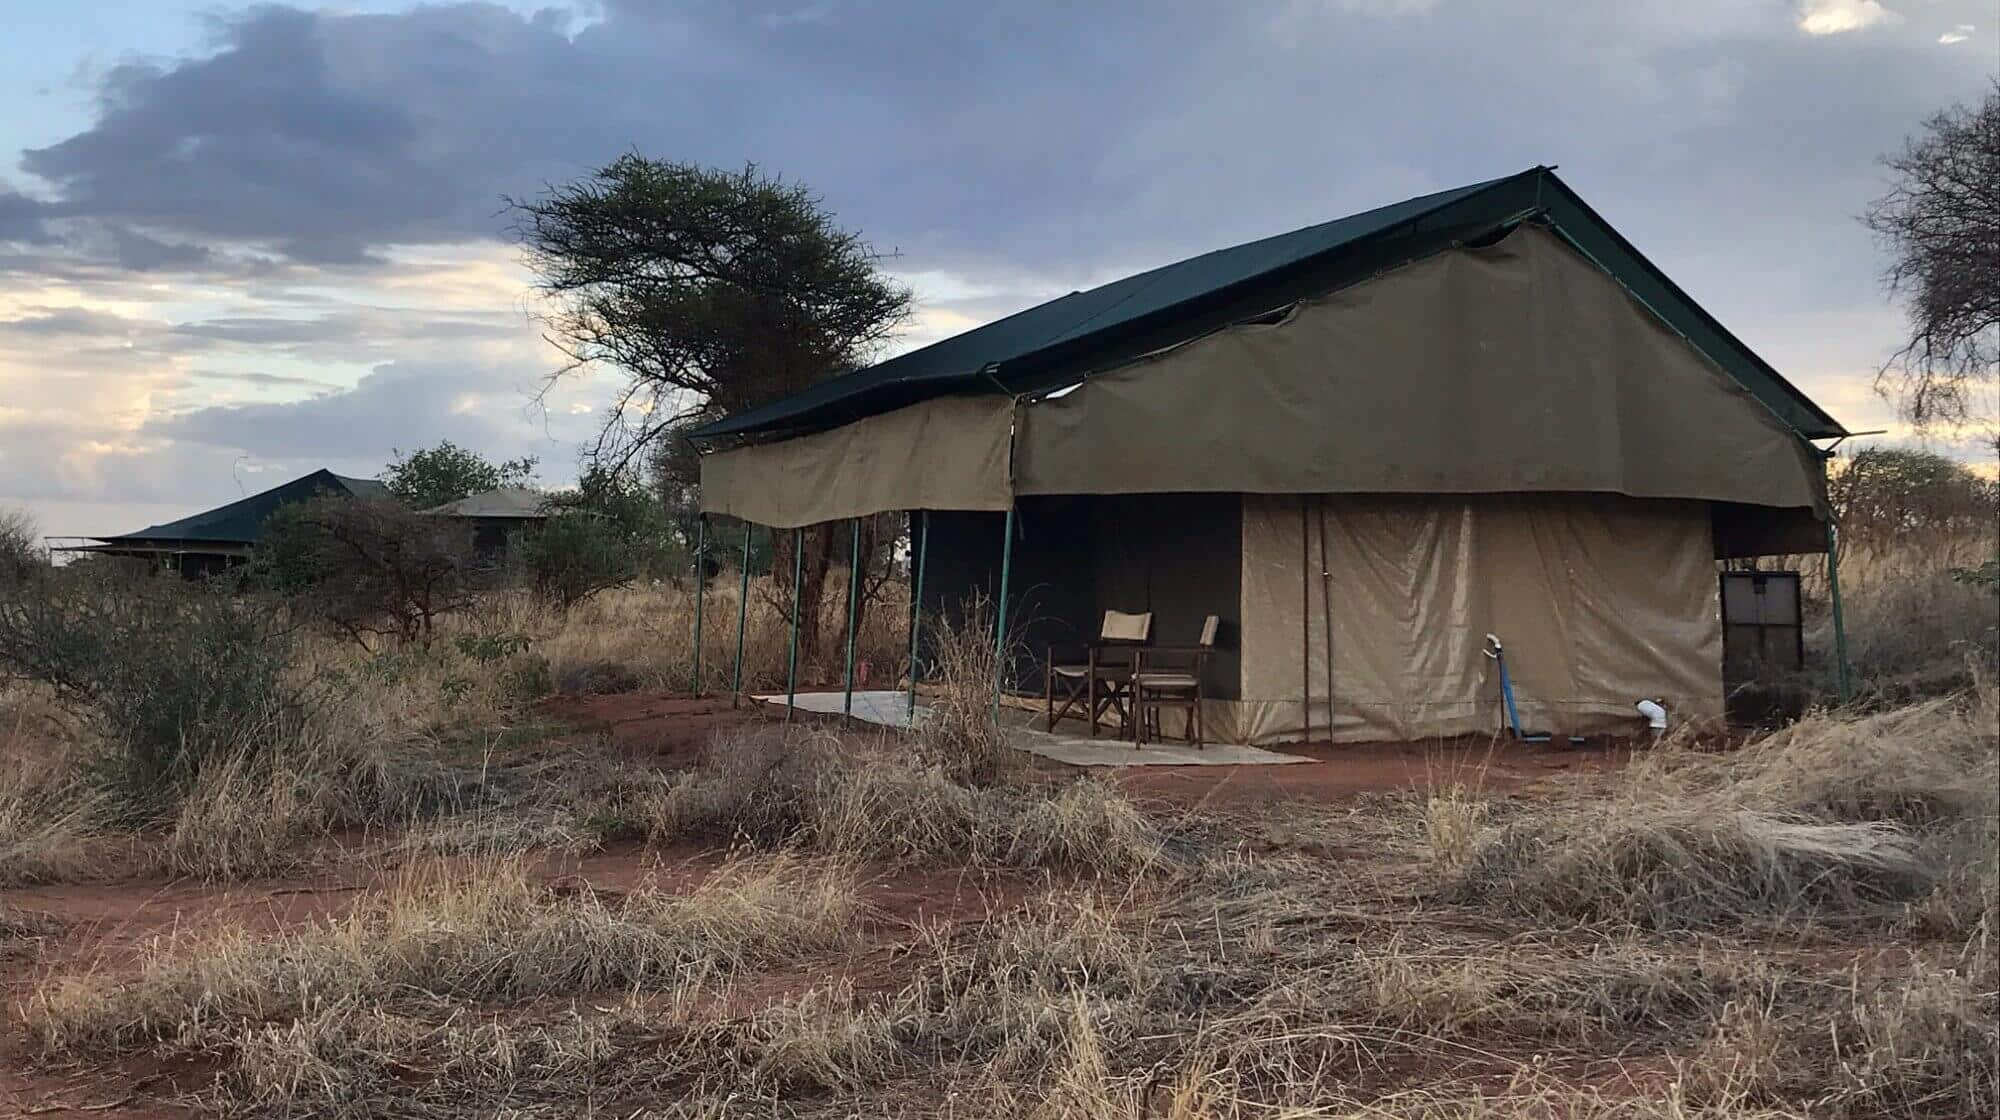 Ang'ata tarangire camp - accommodation in tarangire - easy travel tanzania